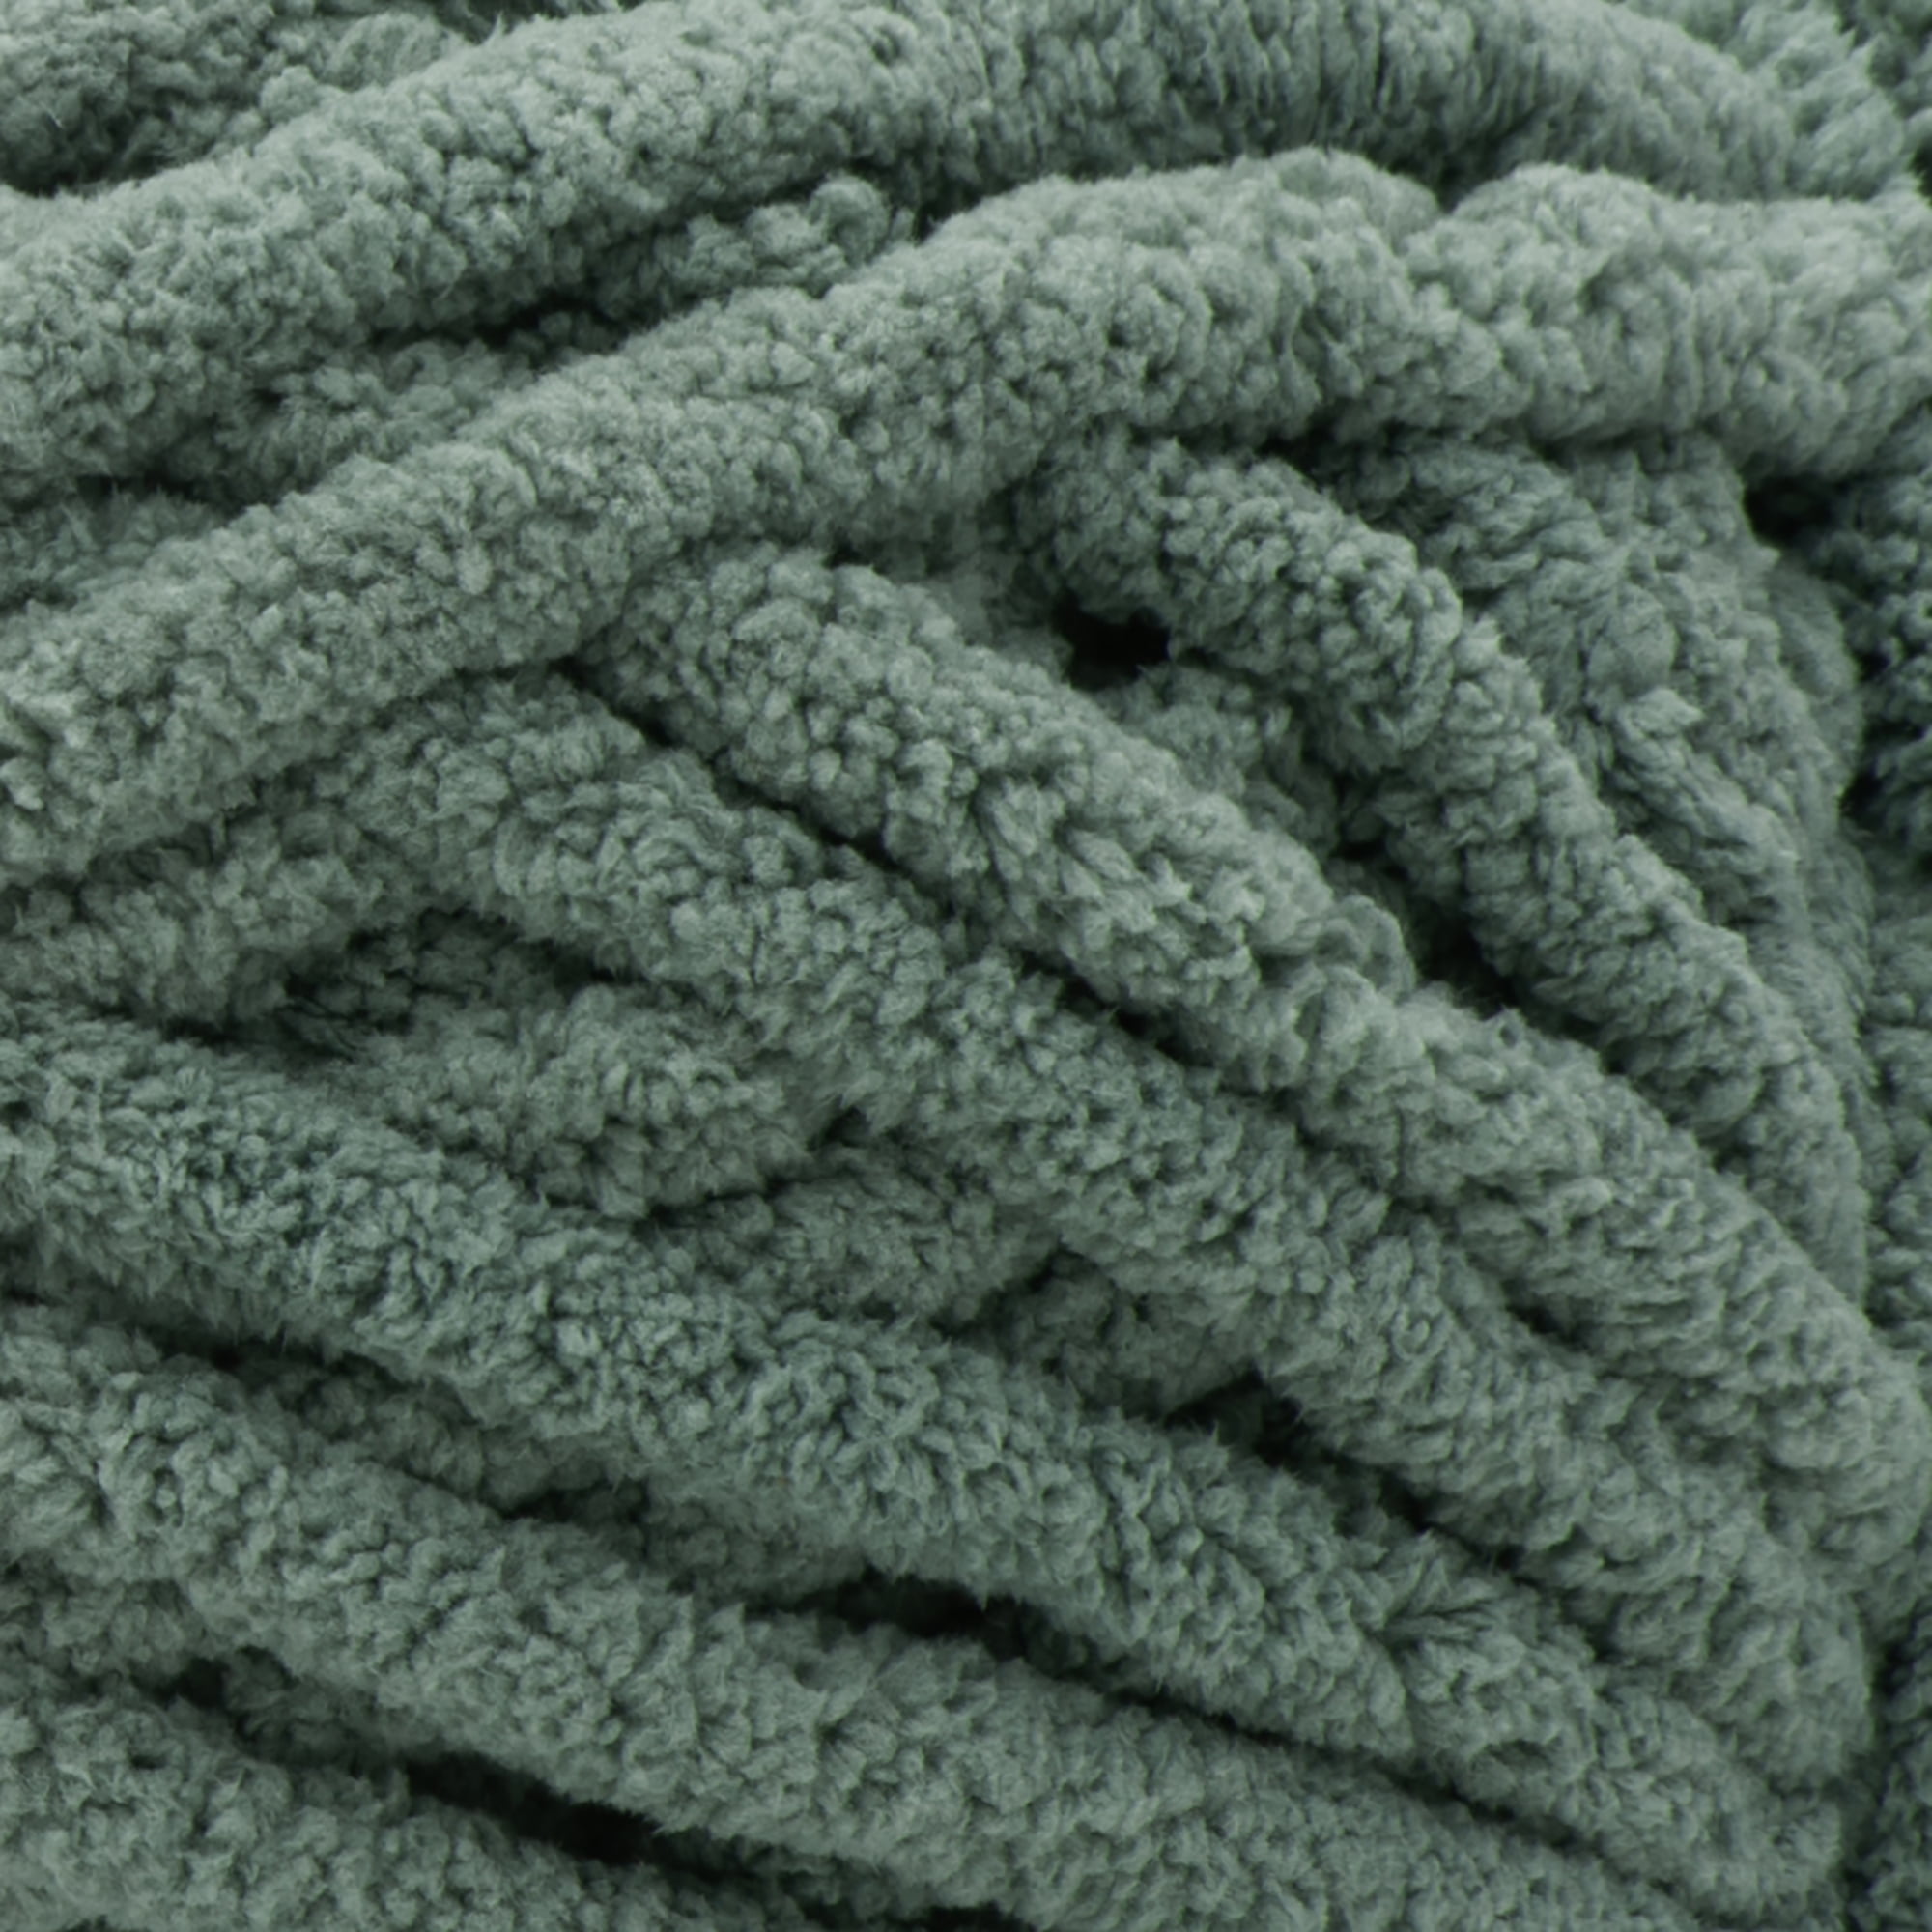 Bernat Yarn Blanket Extra Blanket Yarn, Jumbo Gauge #7, 2-Pack (Burnt Rose)